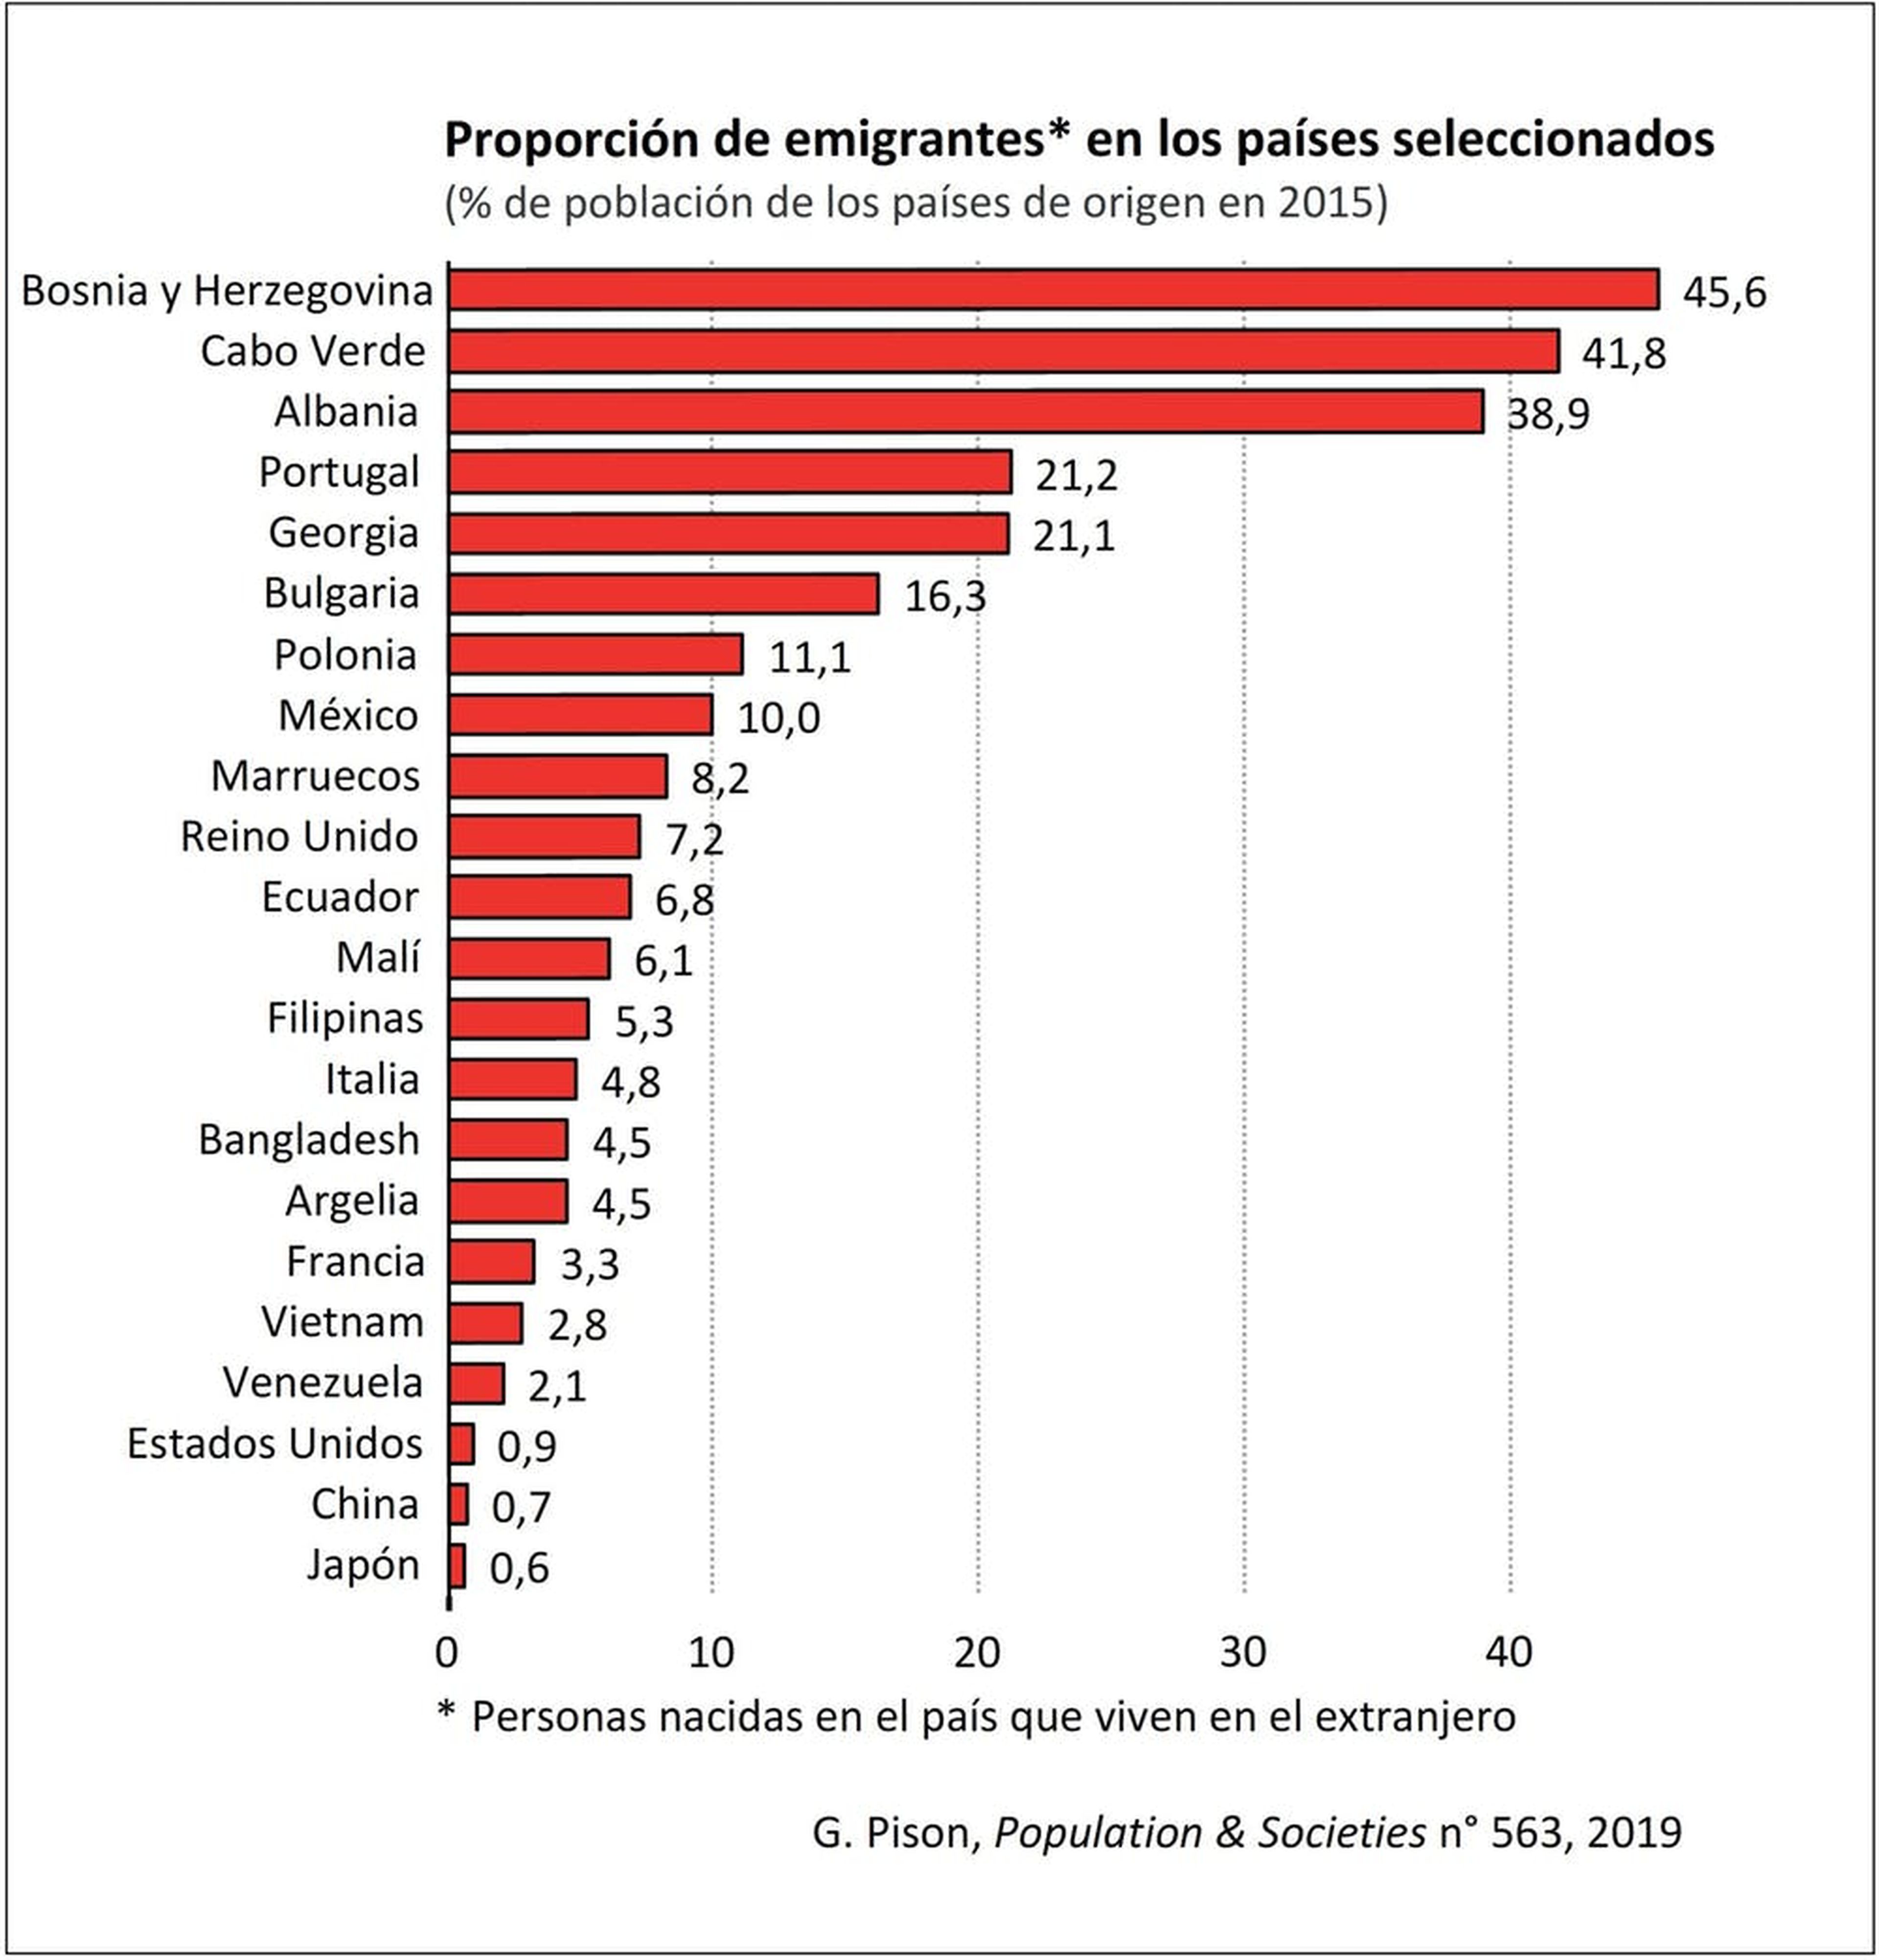 Países con más proporción de población emigrada